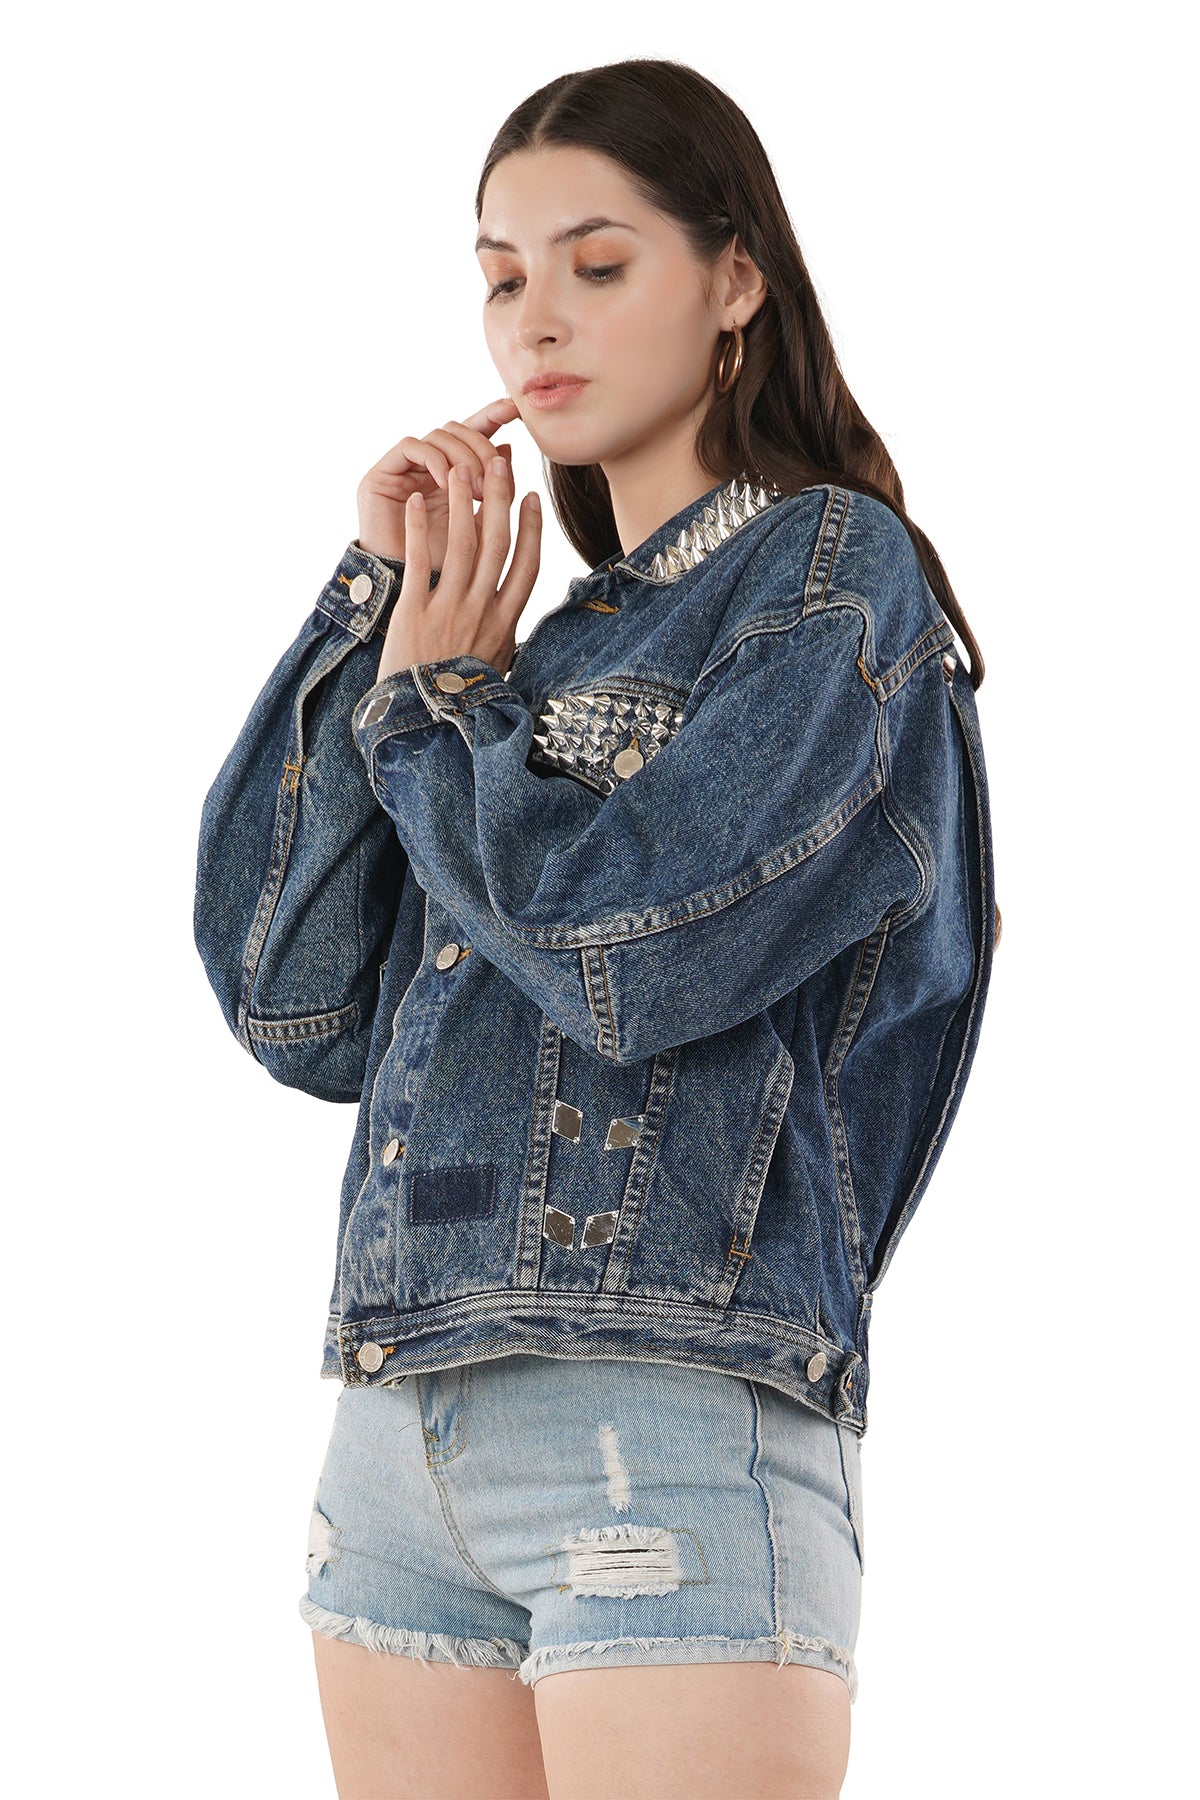 Women Casual Baggy Denim Jacket Long Sleeve Jeans Coat Biker Outwear Tops |  Fruugo CA